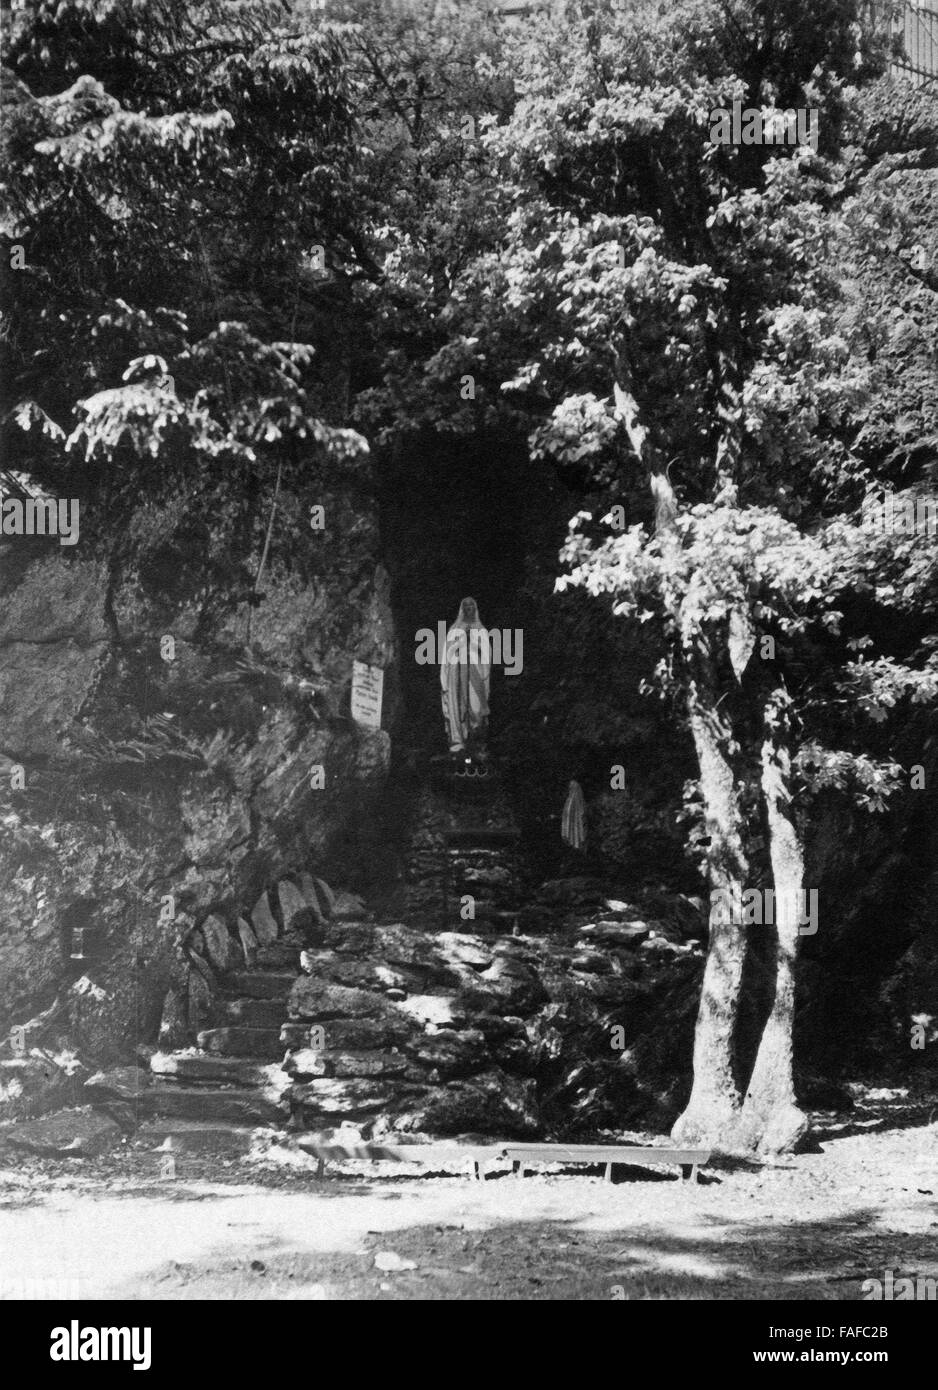 Sterben Sie Lourdesgrotte Mit der Marienstatue Bei Richelsley Im Hohen Venn, Deutschland 1920er Jahre. Lourdes-Grotte mit Statue der Heiligen Maria in Richelsley in Hohes Venn Region Deutschland der 1920er Jahre. Stockfoto